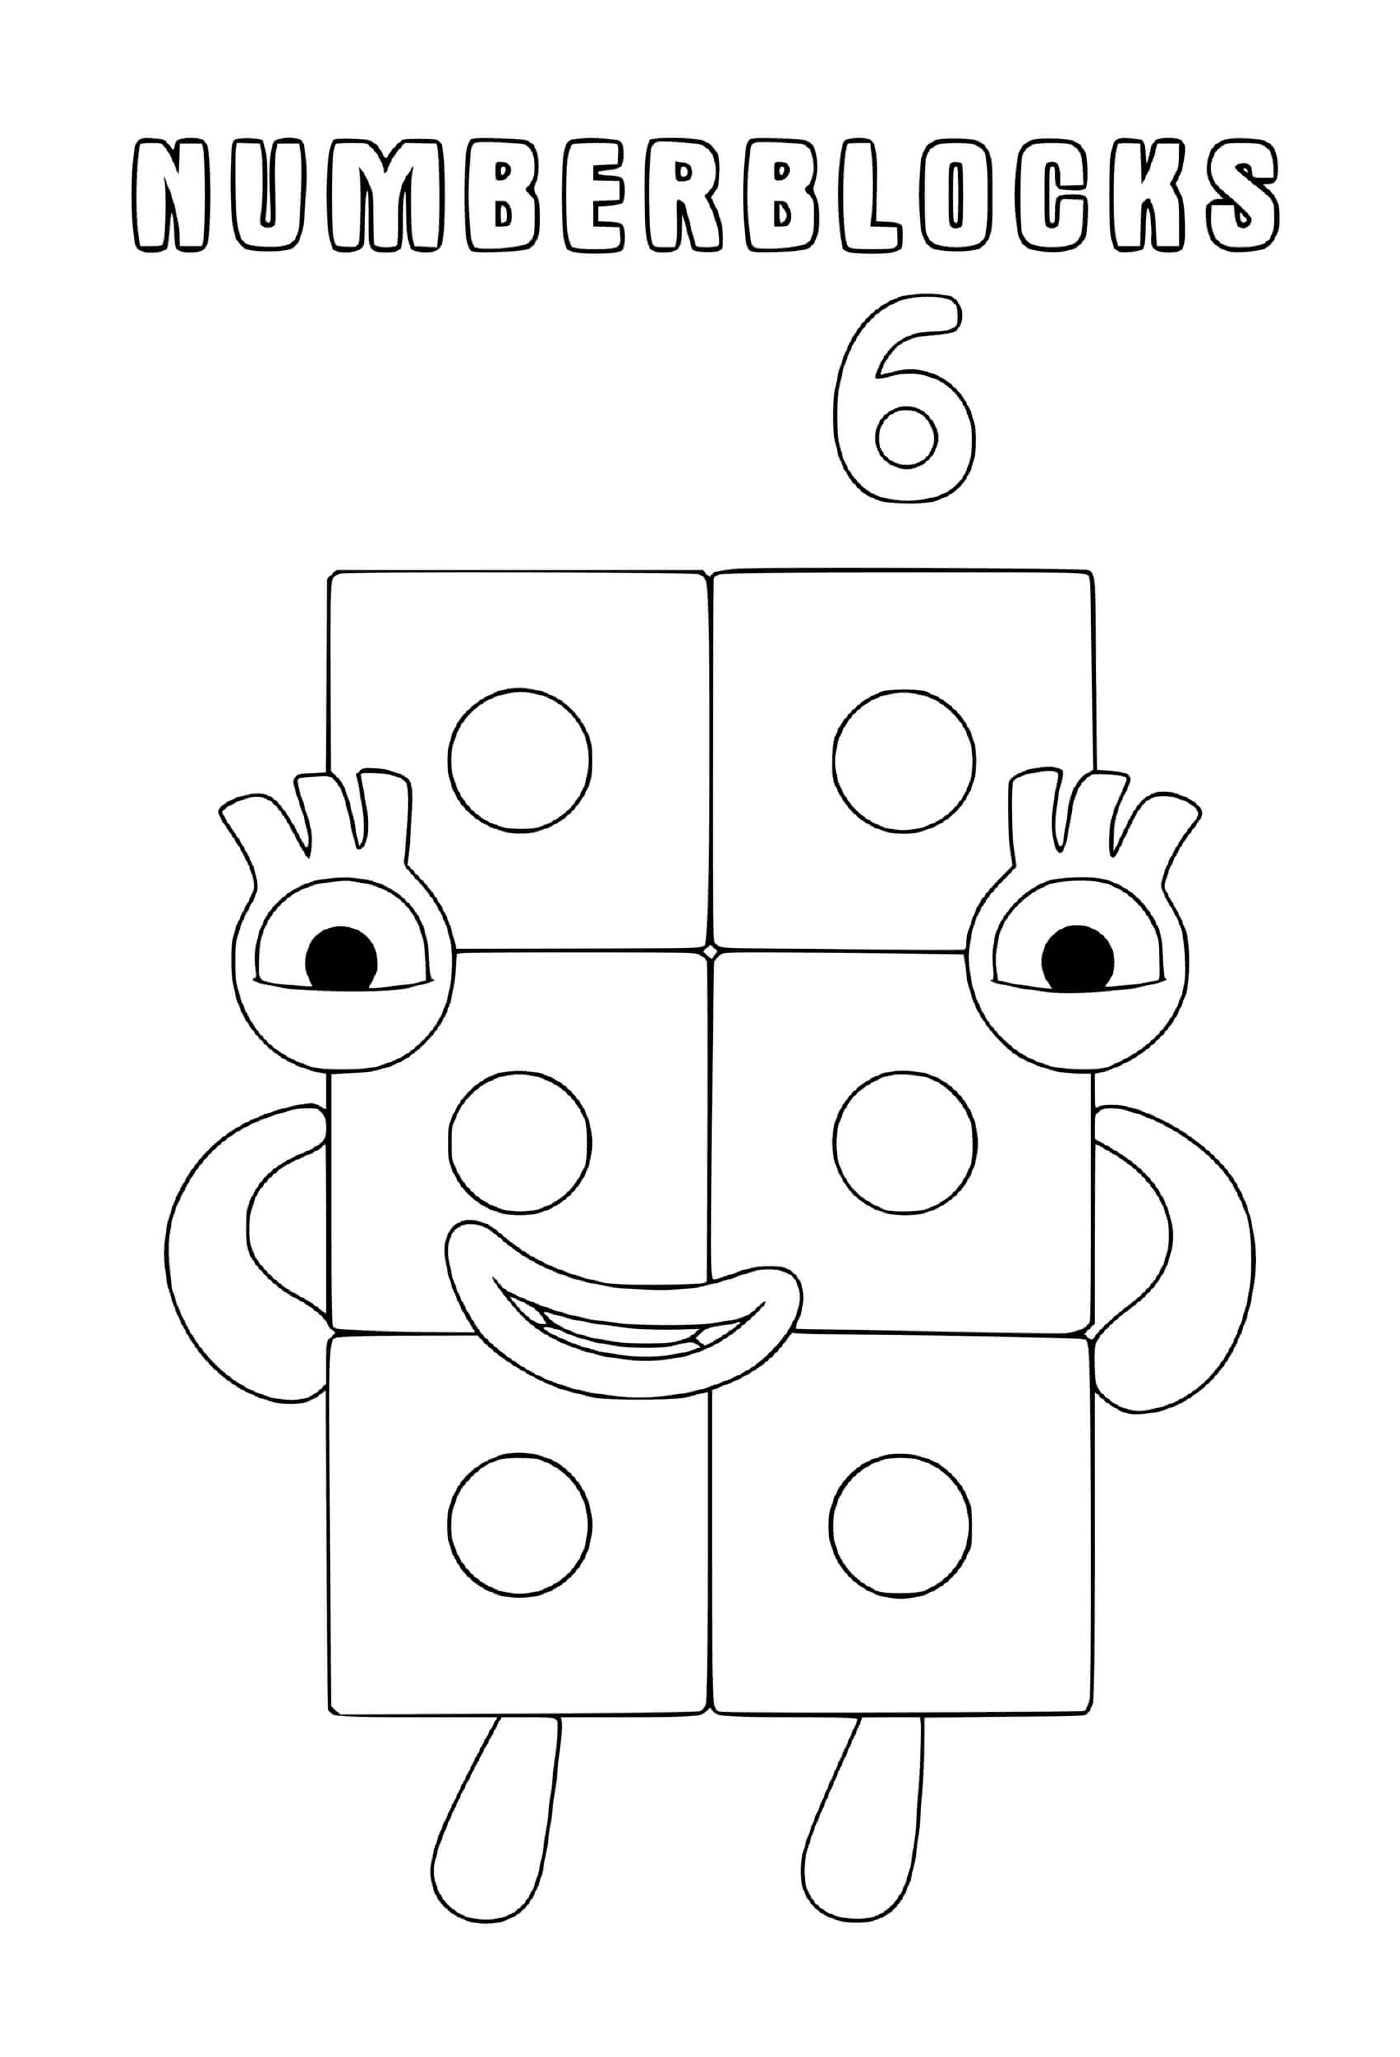  Numberblocks número 6, um bloco com olhos 